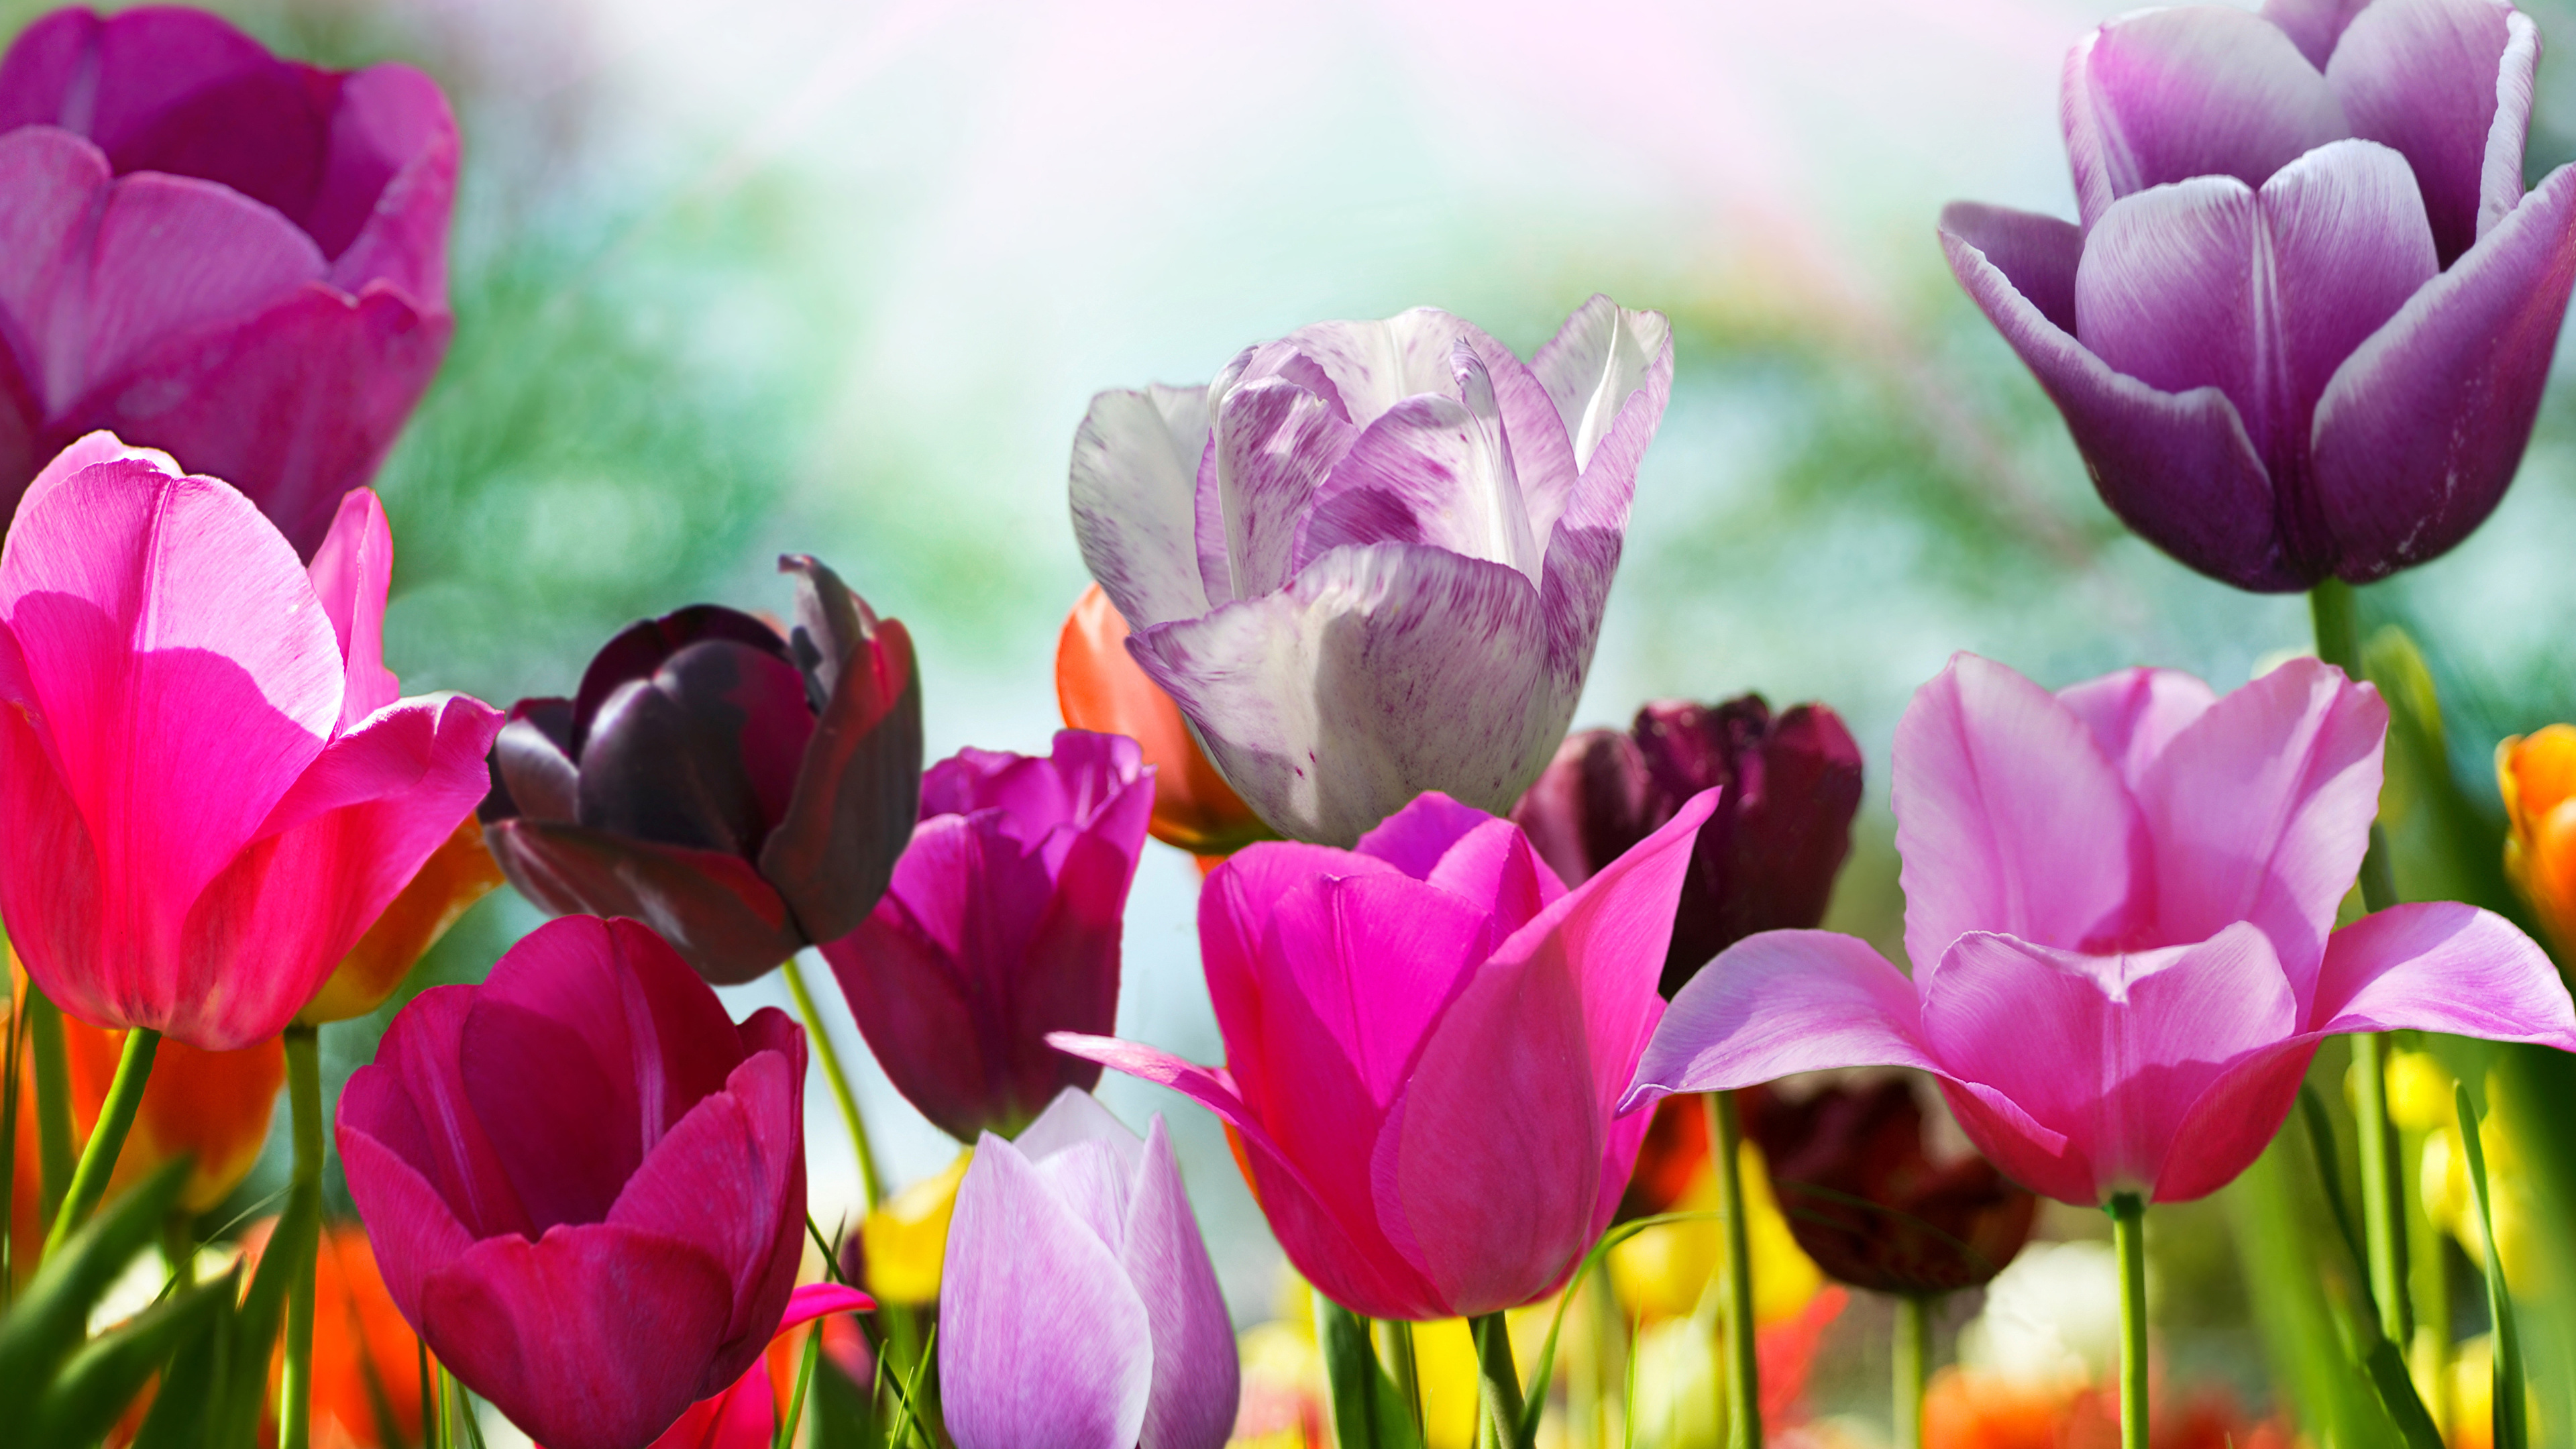 Tulipes Violettes et Roses en Fleurs Pendant la Journée. Wallpaper in 3840x2160 Resolution